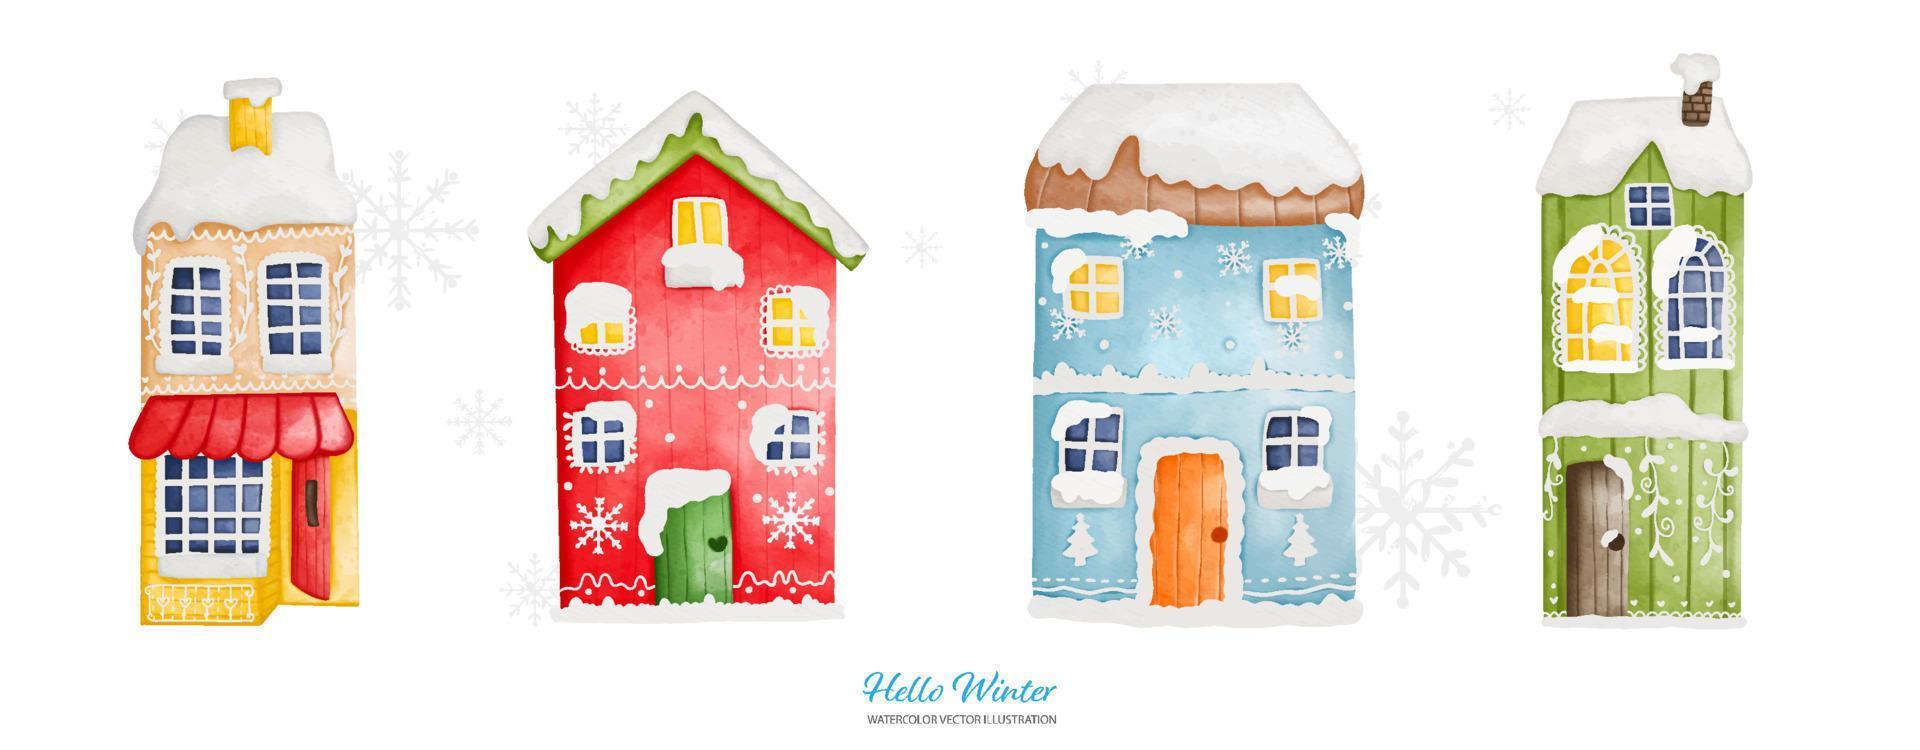 casa de inverno em aquarela com uma touca de neve, ilustração em aquarela de tinta digital vetor